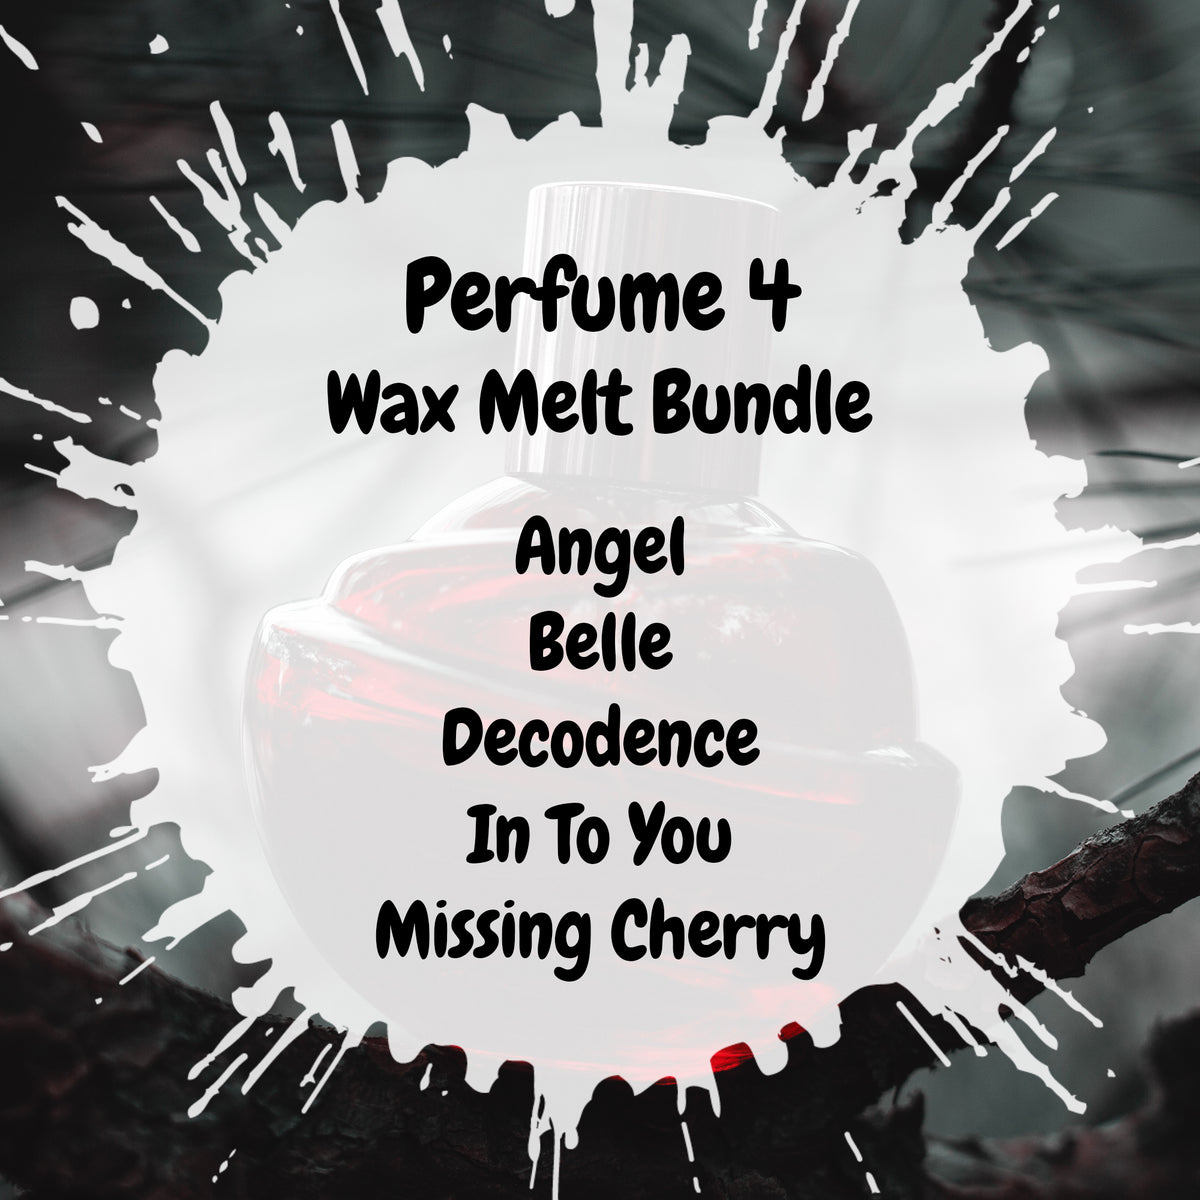 Perfume 4 Wax Melt Bundle